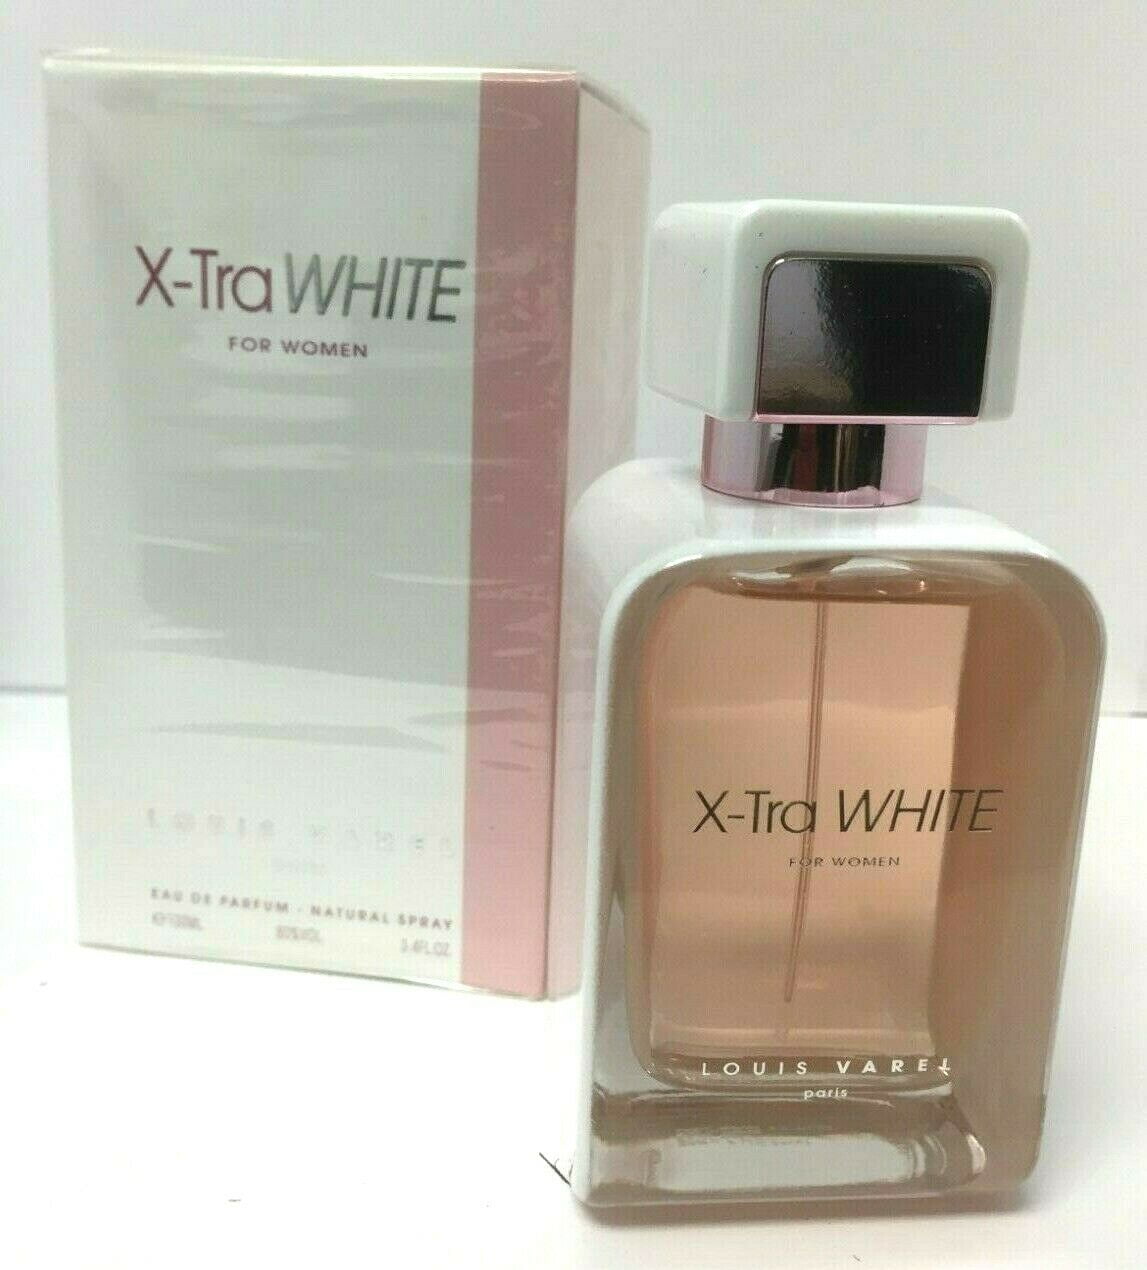  LOUIS VAREL Xtra White Cologne, 3.4 Ounce : Eau De Parfums :  Beauty & Personal Care